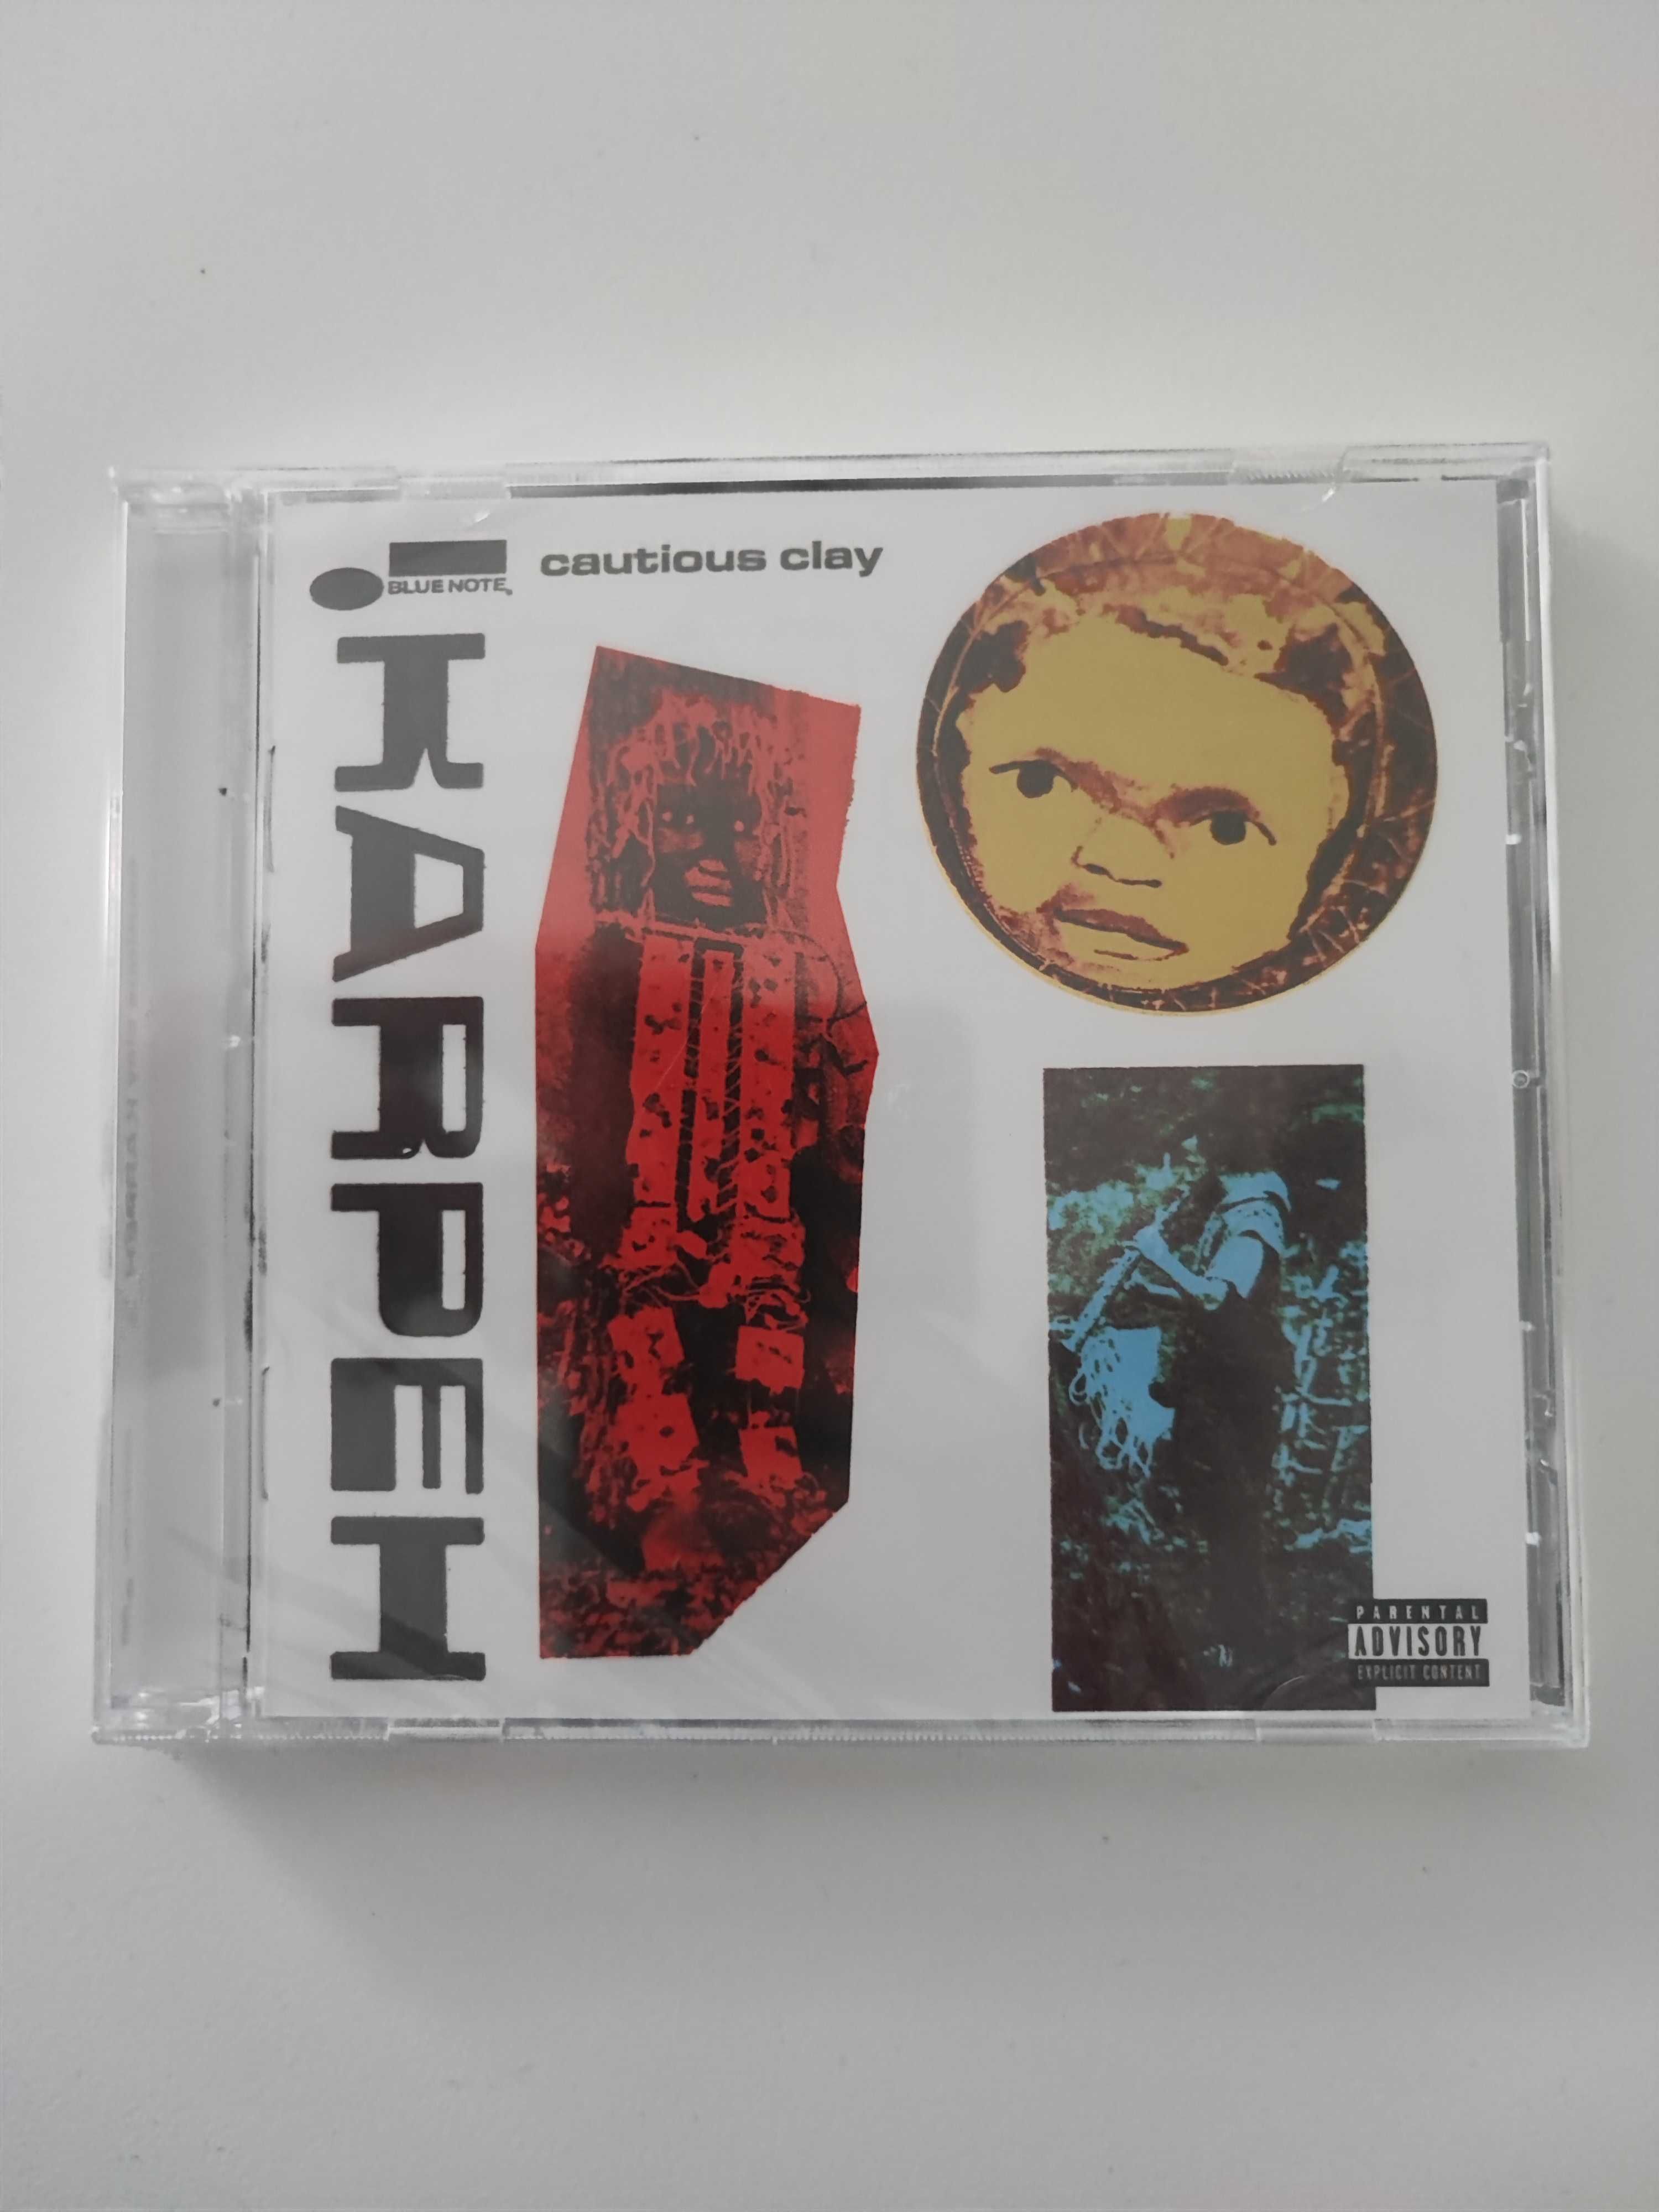 Cautious Clay - "Karpeh" CD